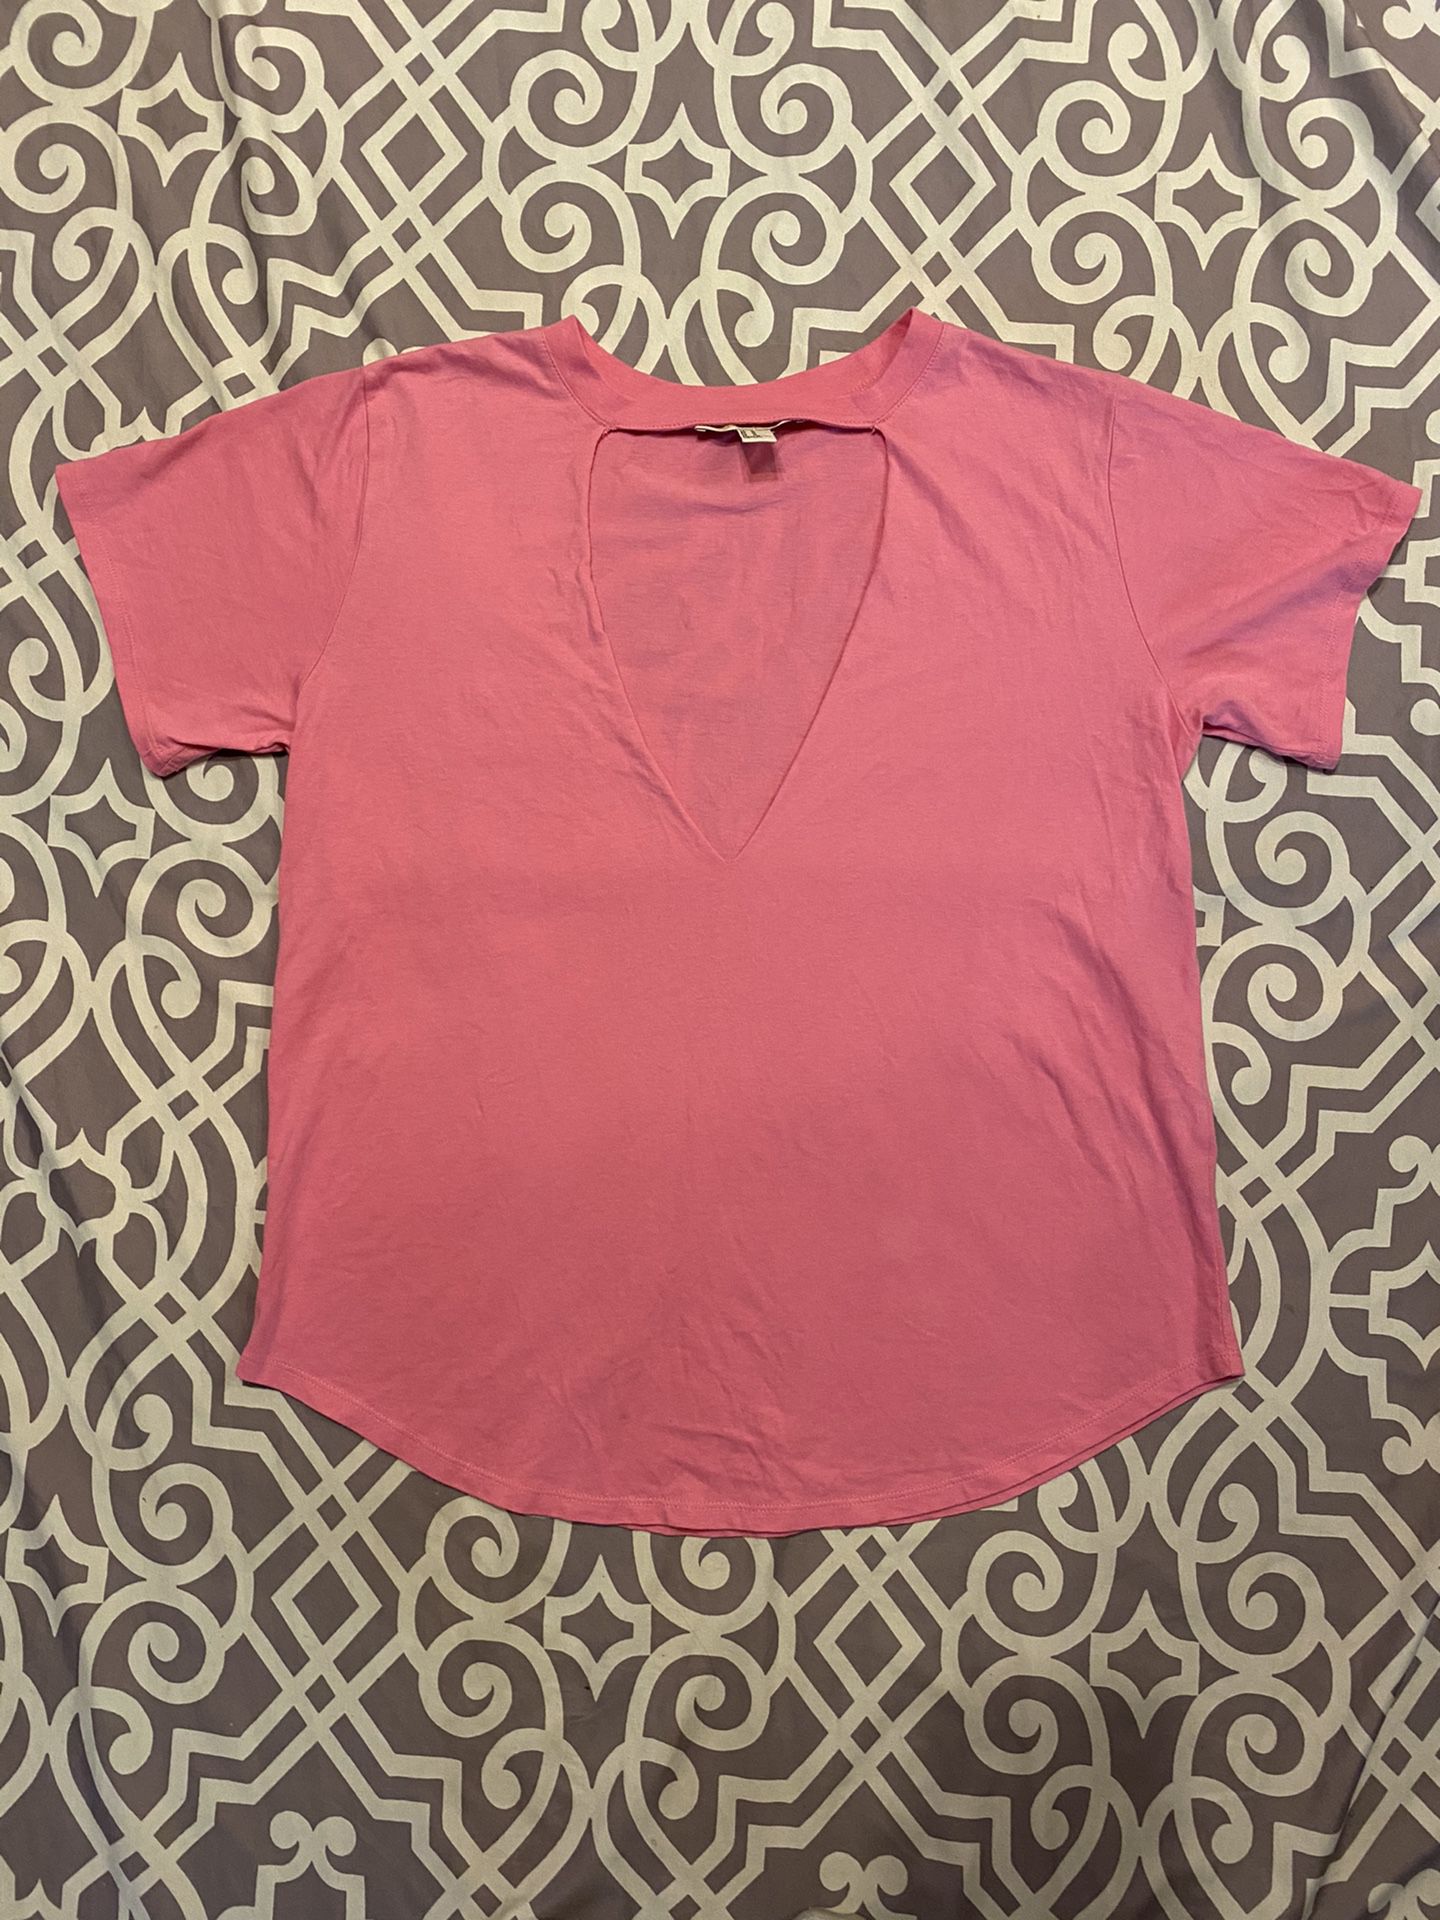 Size Medium Hot Pink F21 Forever 21 T Shirt Cutout Summer Kawaii Basic